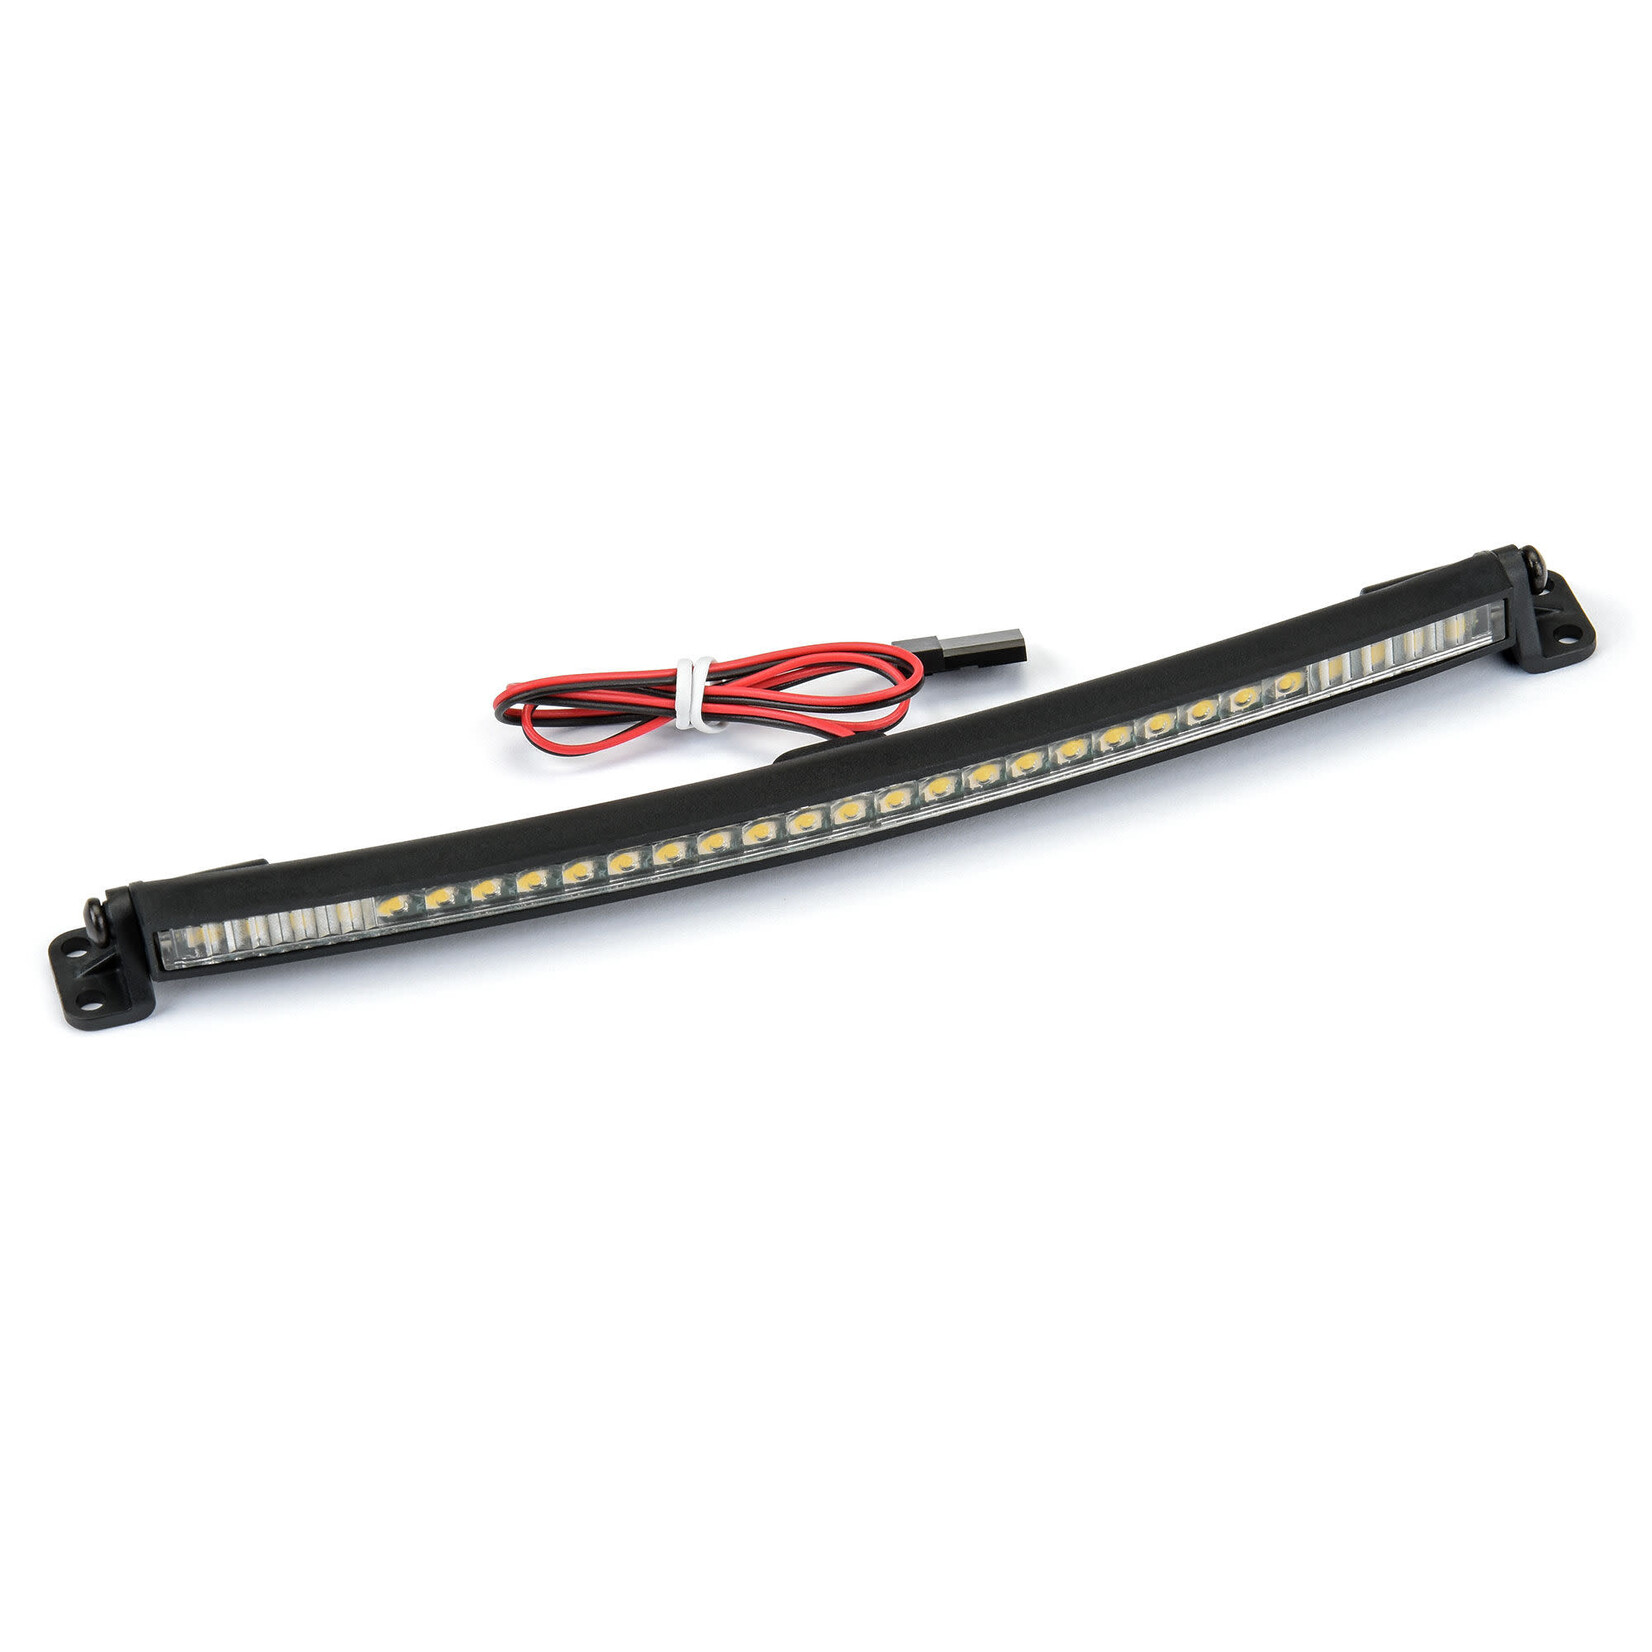 Pro-Line Pro-Line 6" Ultra-Slim LED Light Bar Kit 5V-12V (Curved) #6352-03